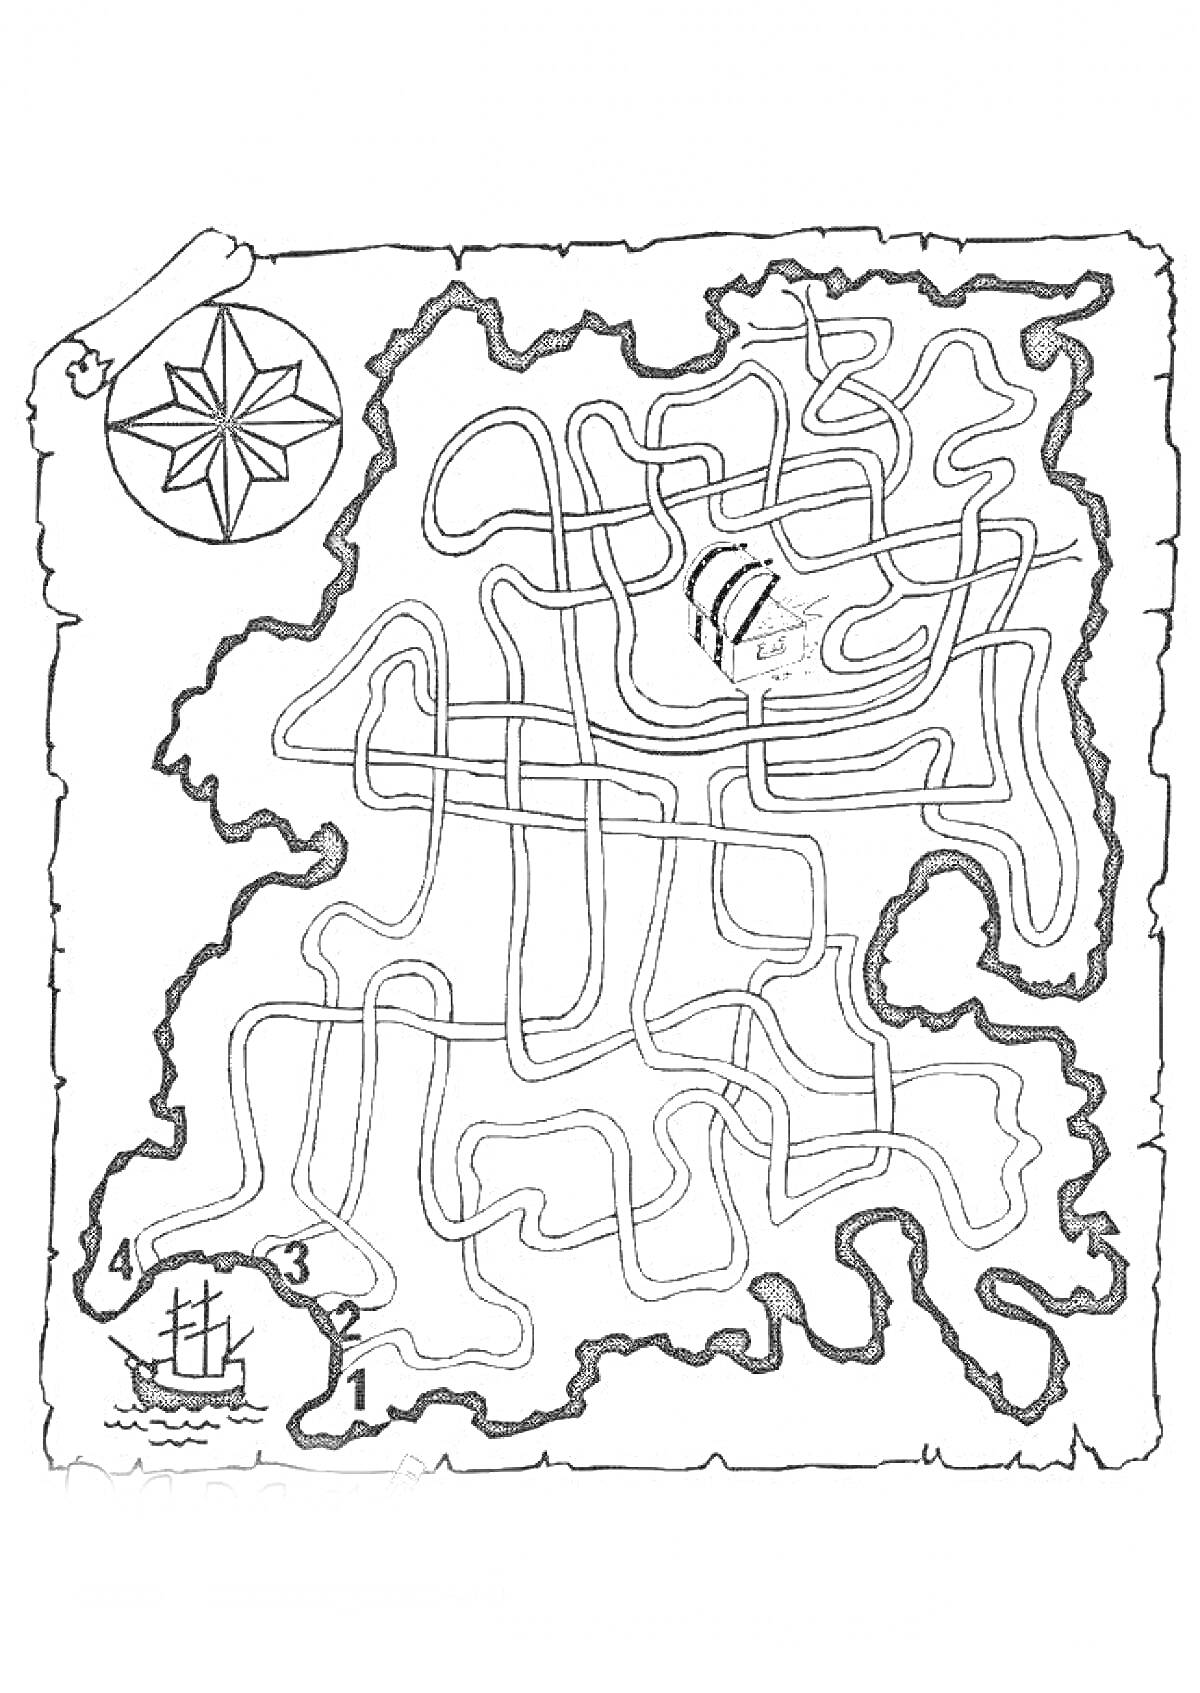 Раскраска Карта Сокровищ с лабиринтом, компасом и сундуком с сокровищами